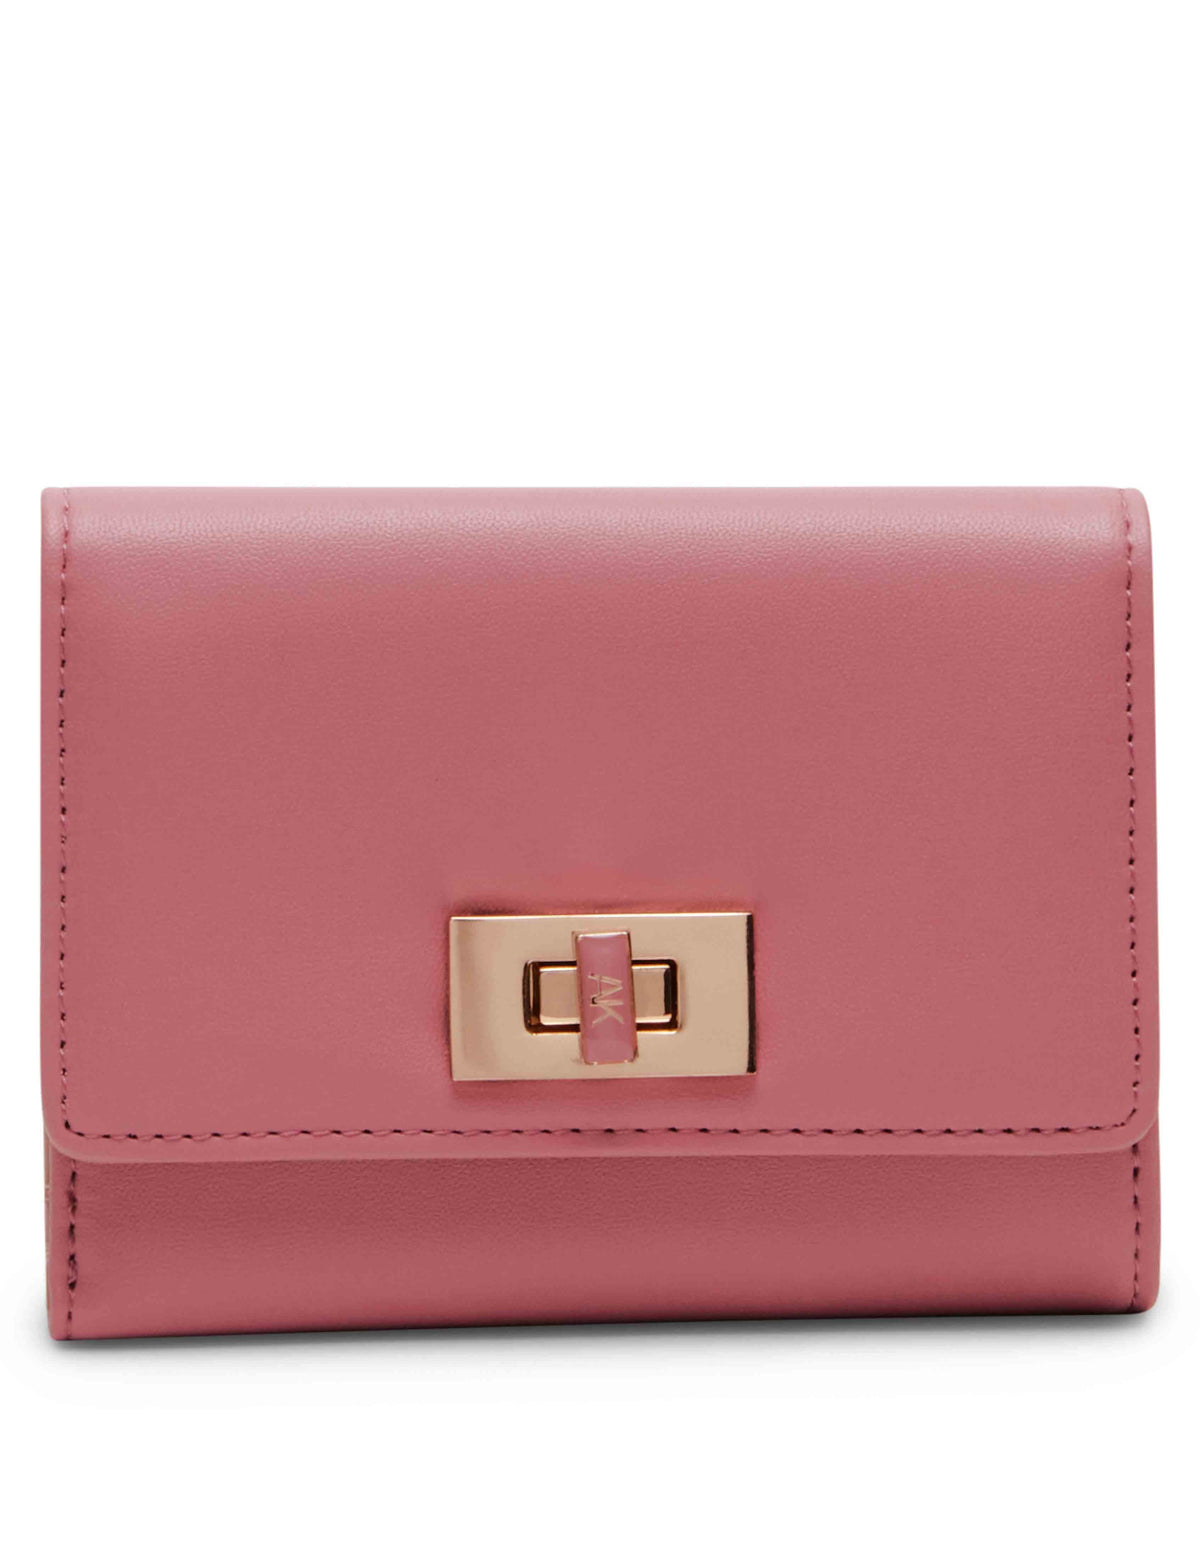 Anne Klein Vintage Pink Medium Flap Wallet With Enamel Turn Lock